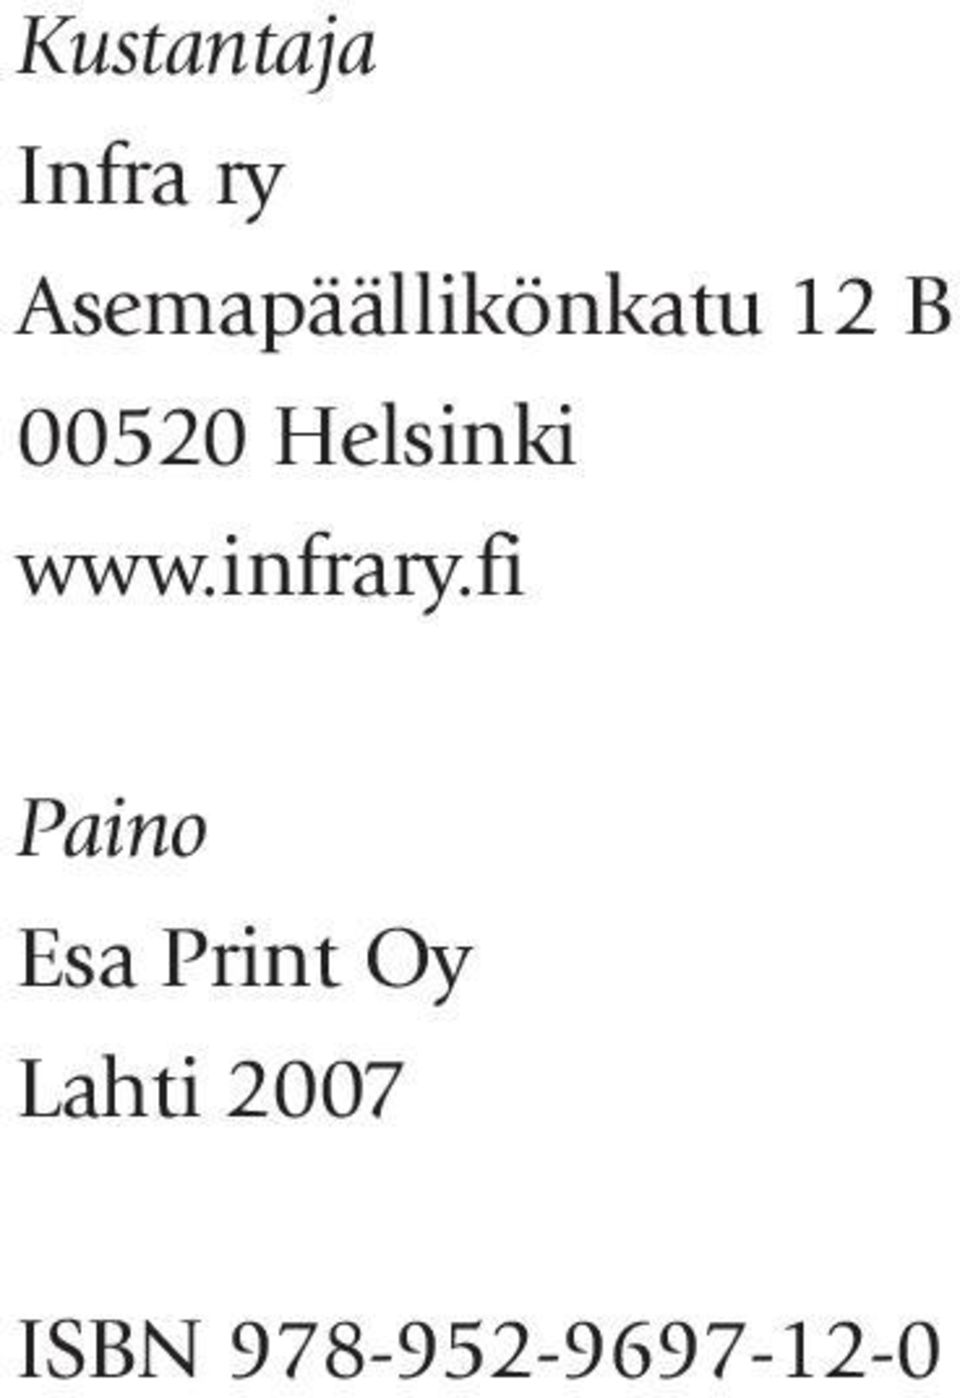 Helsinki www.infrary.